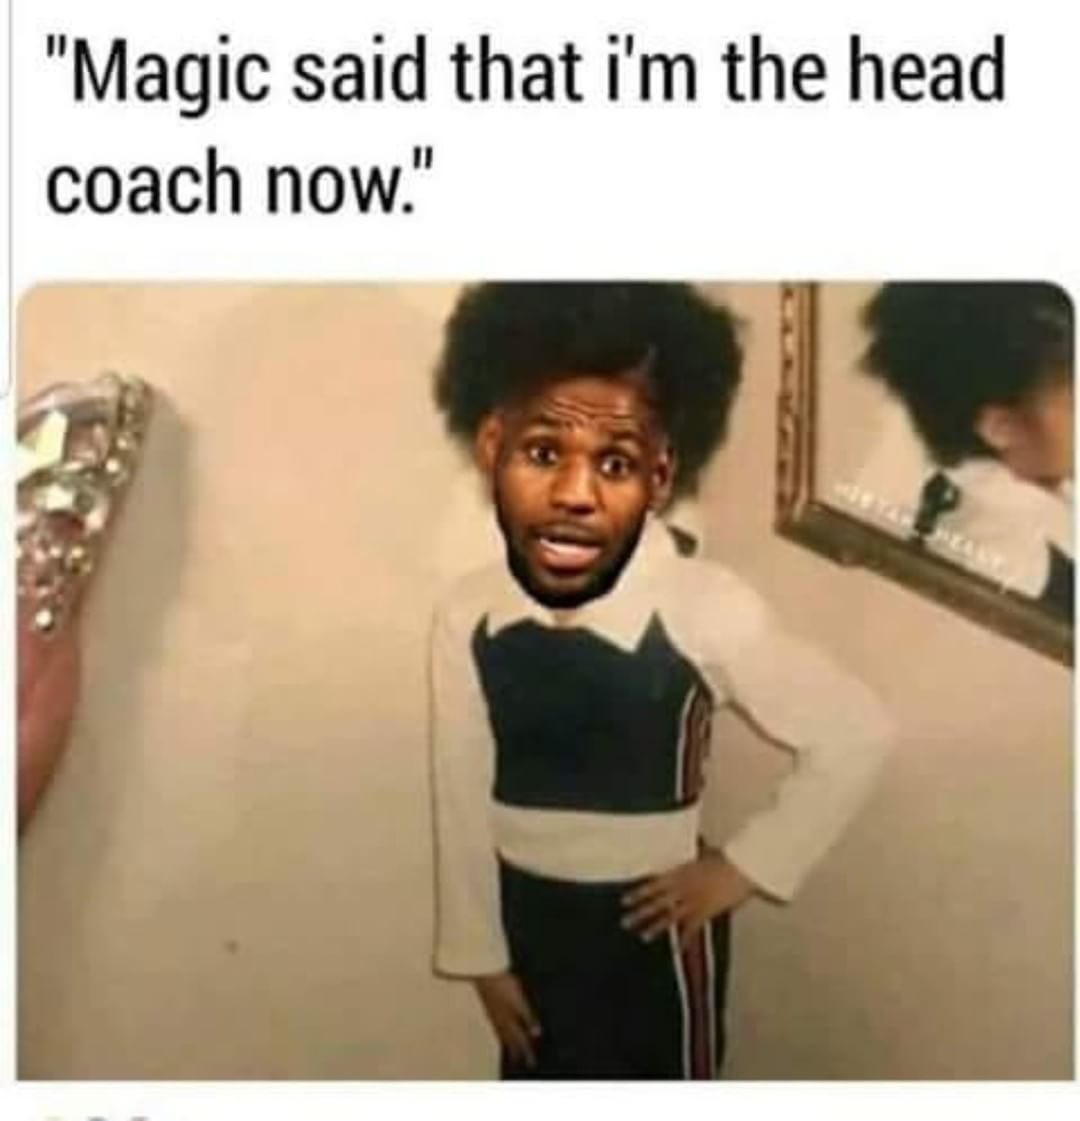 cardi b as a child meme - "Magic said that i'm the head coach now."